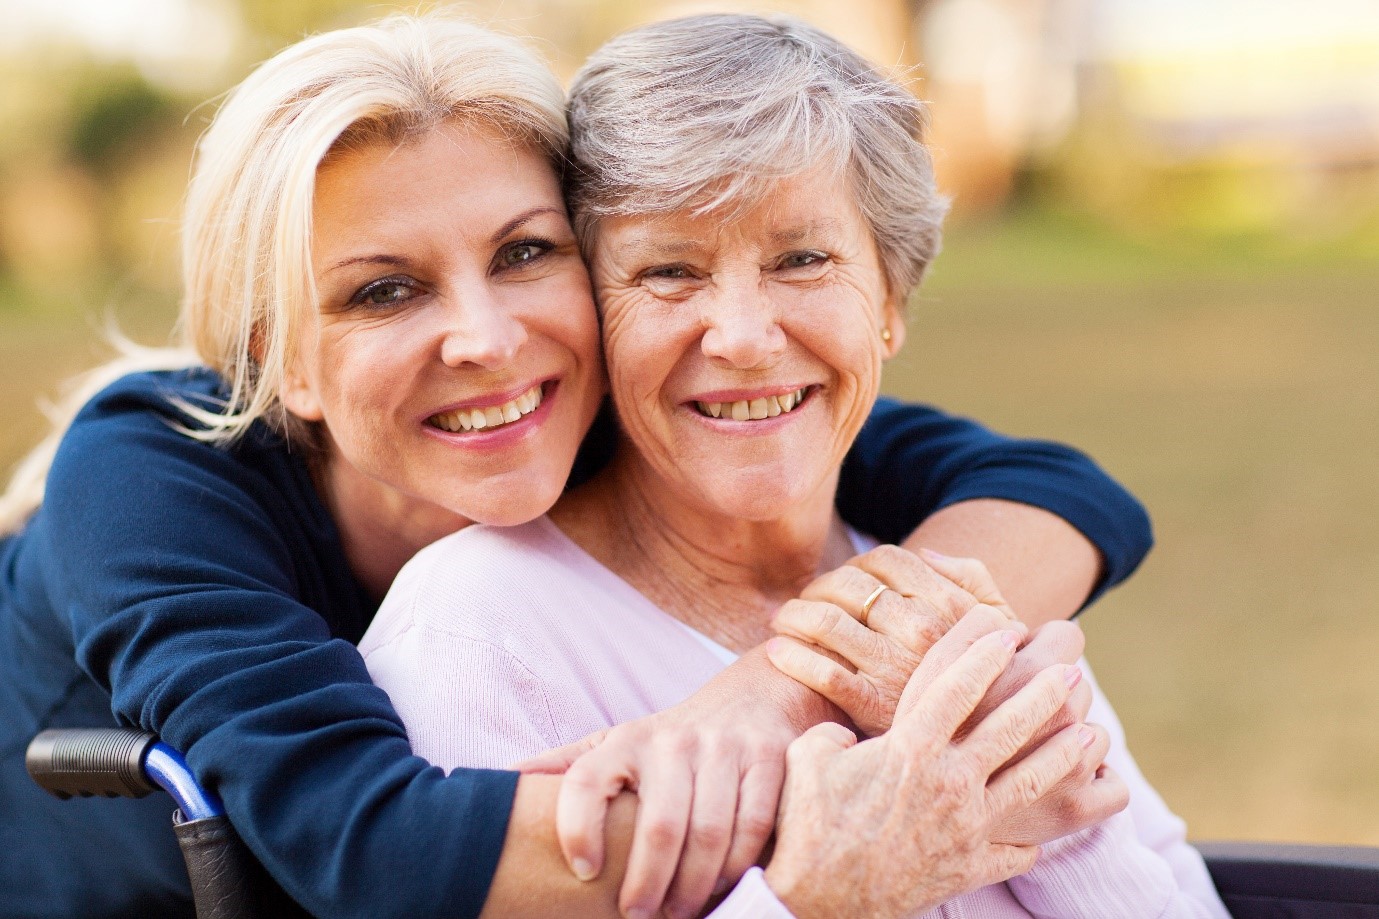 A senior smiling with their caregiver 